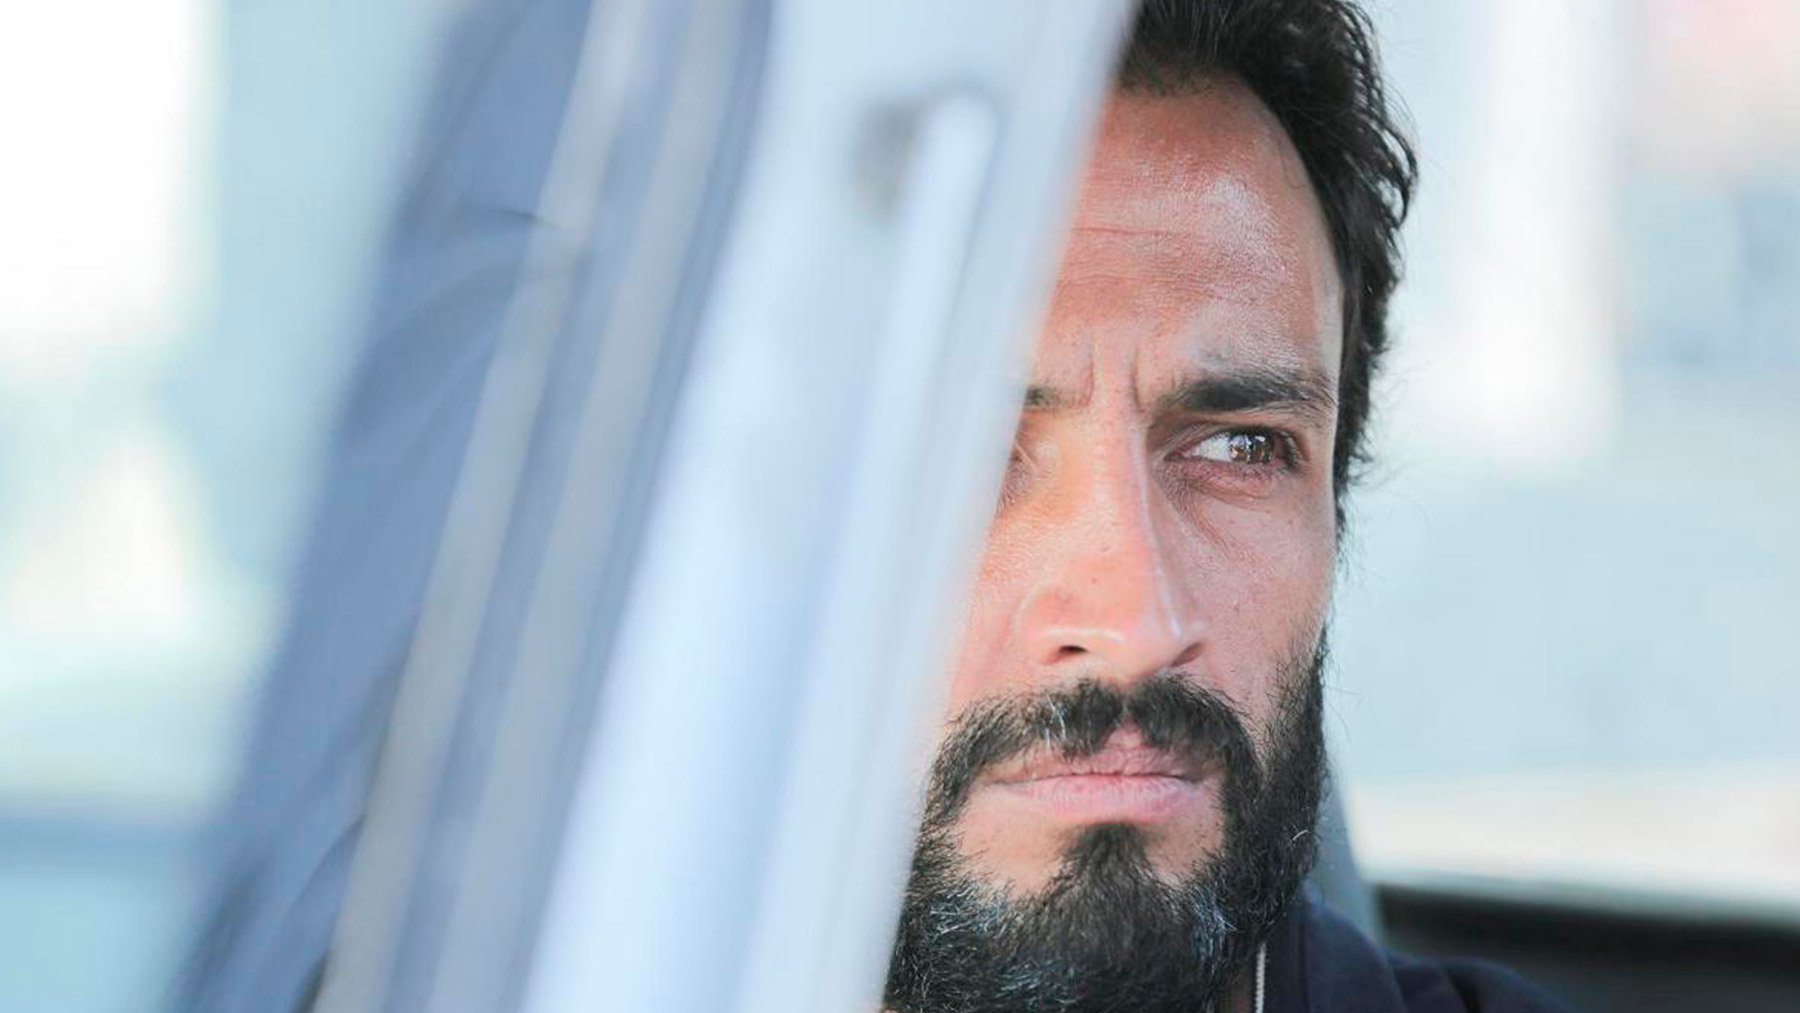 El director de cine Asghar Farhadi culpable de plagio por ‘Un héroe’